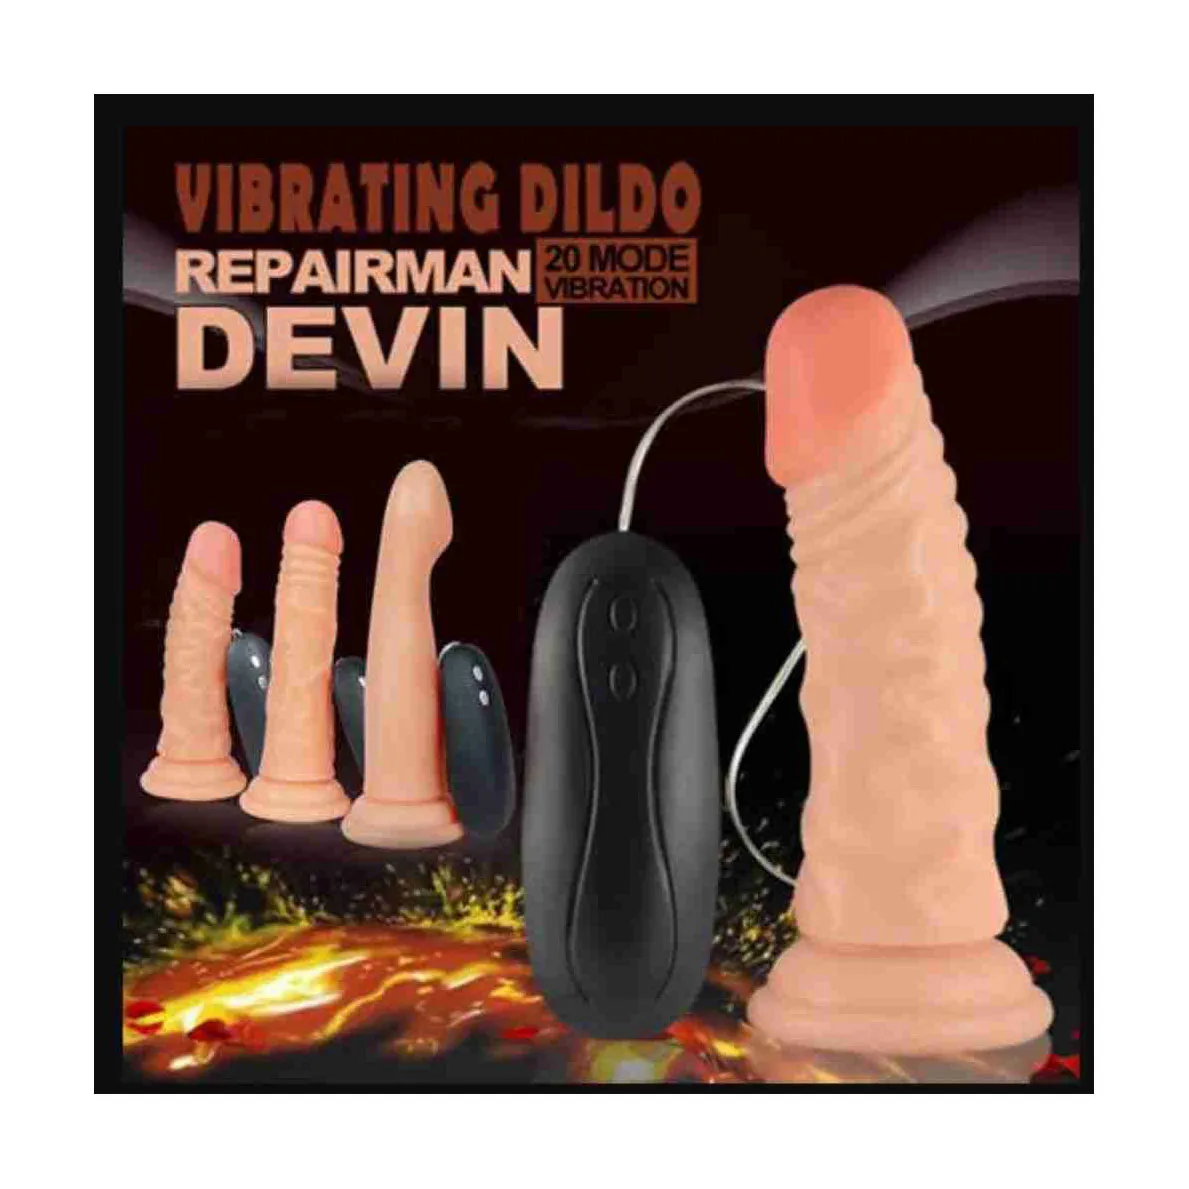 Vibrating Dildo Glenn 5.9 – Sex Shop